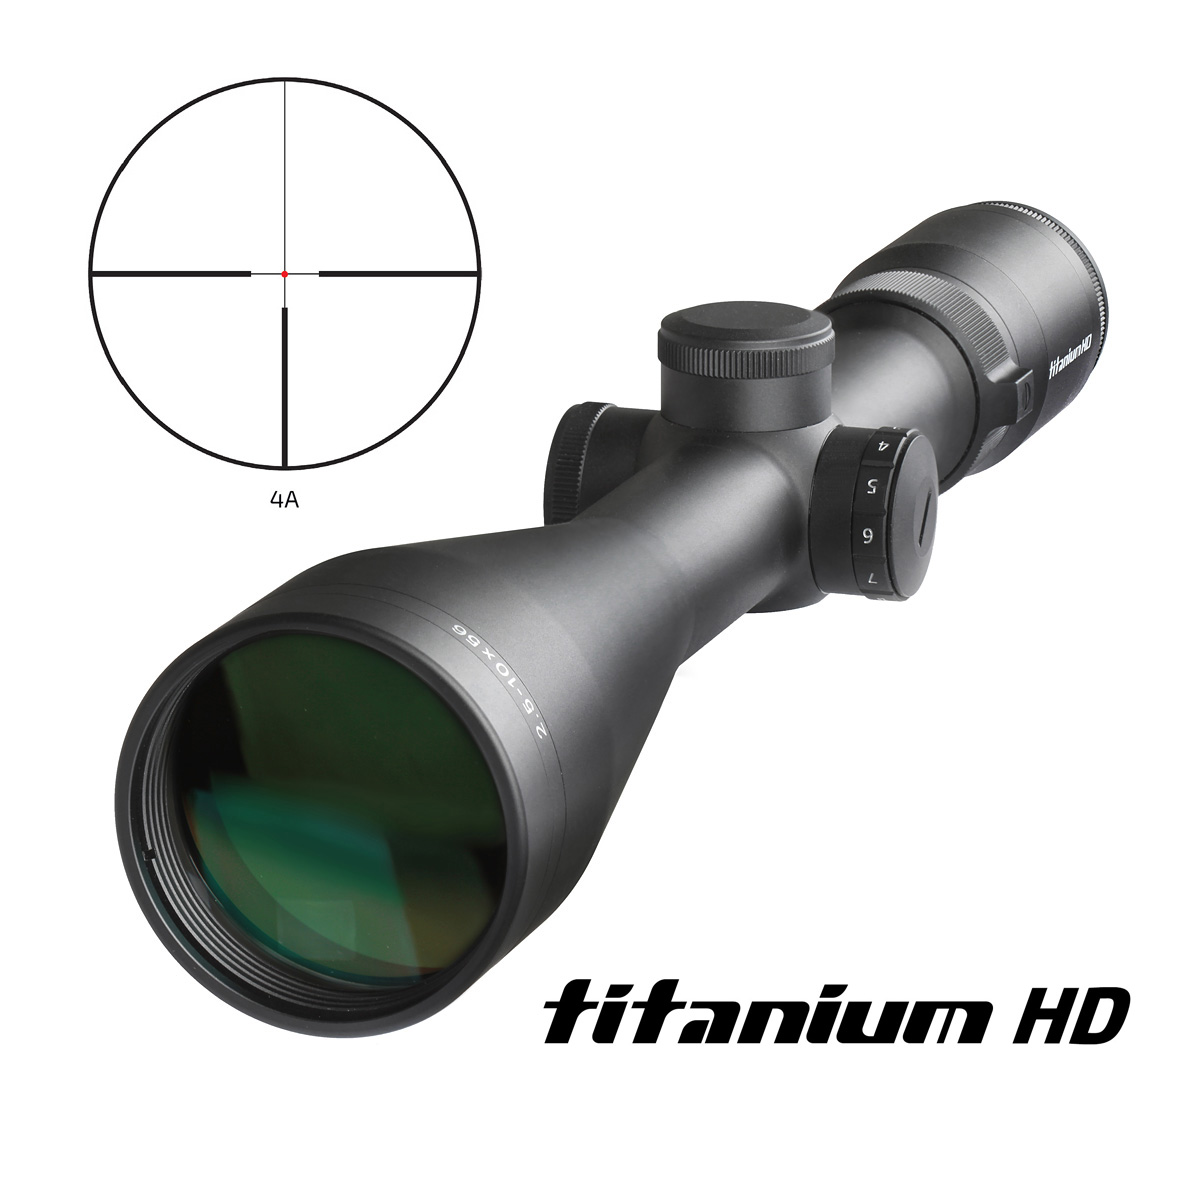 Delta Titanium 2,5-10x56 HD céltávcső